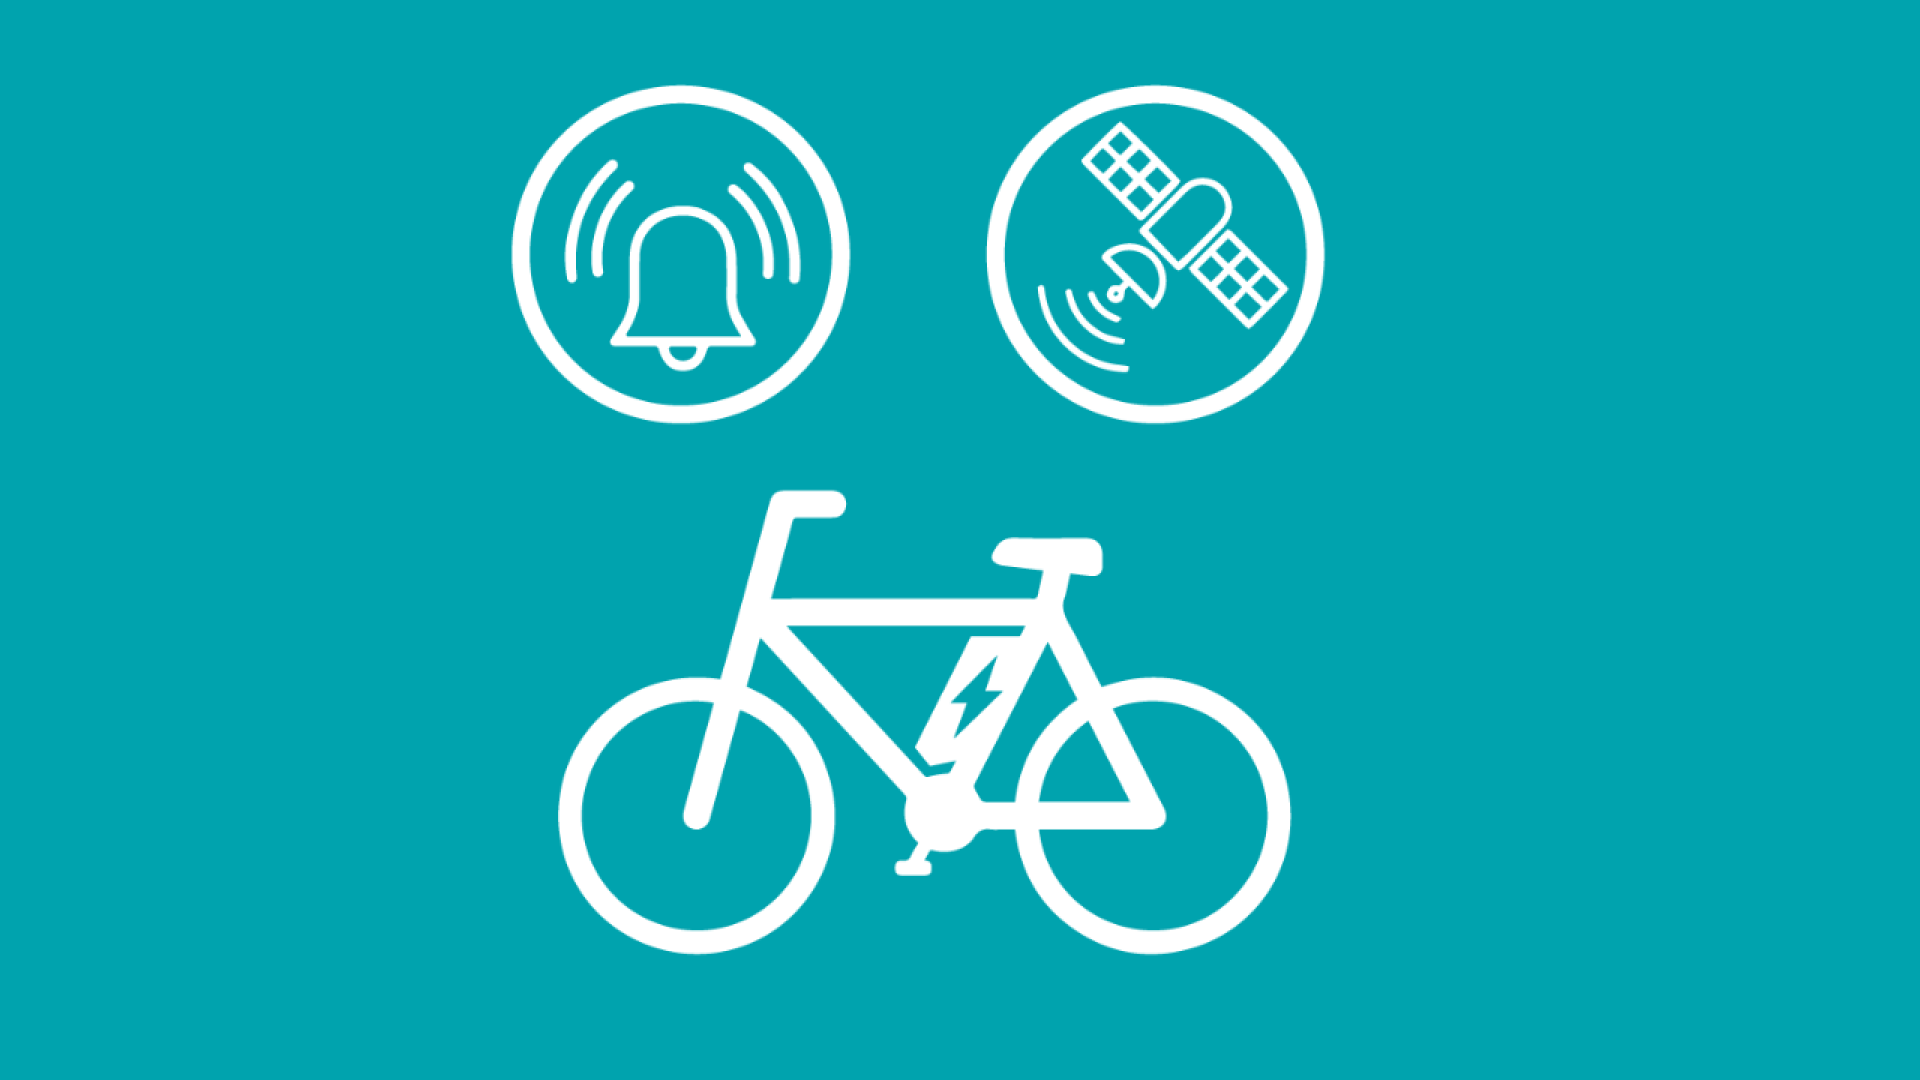 Icons stellen die Alarmsicherung und das GPS-Tracking als E-Bike Diebstahlschutz dar